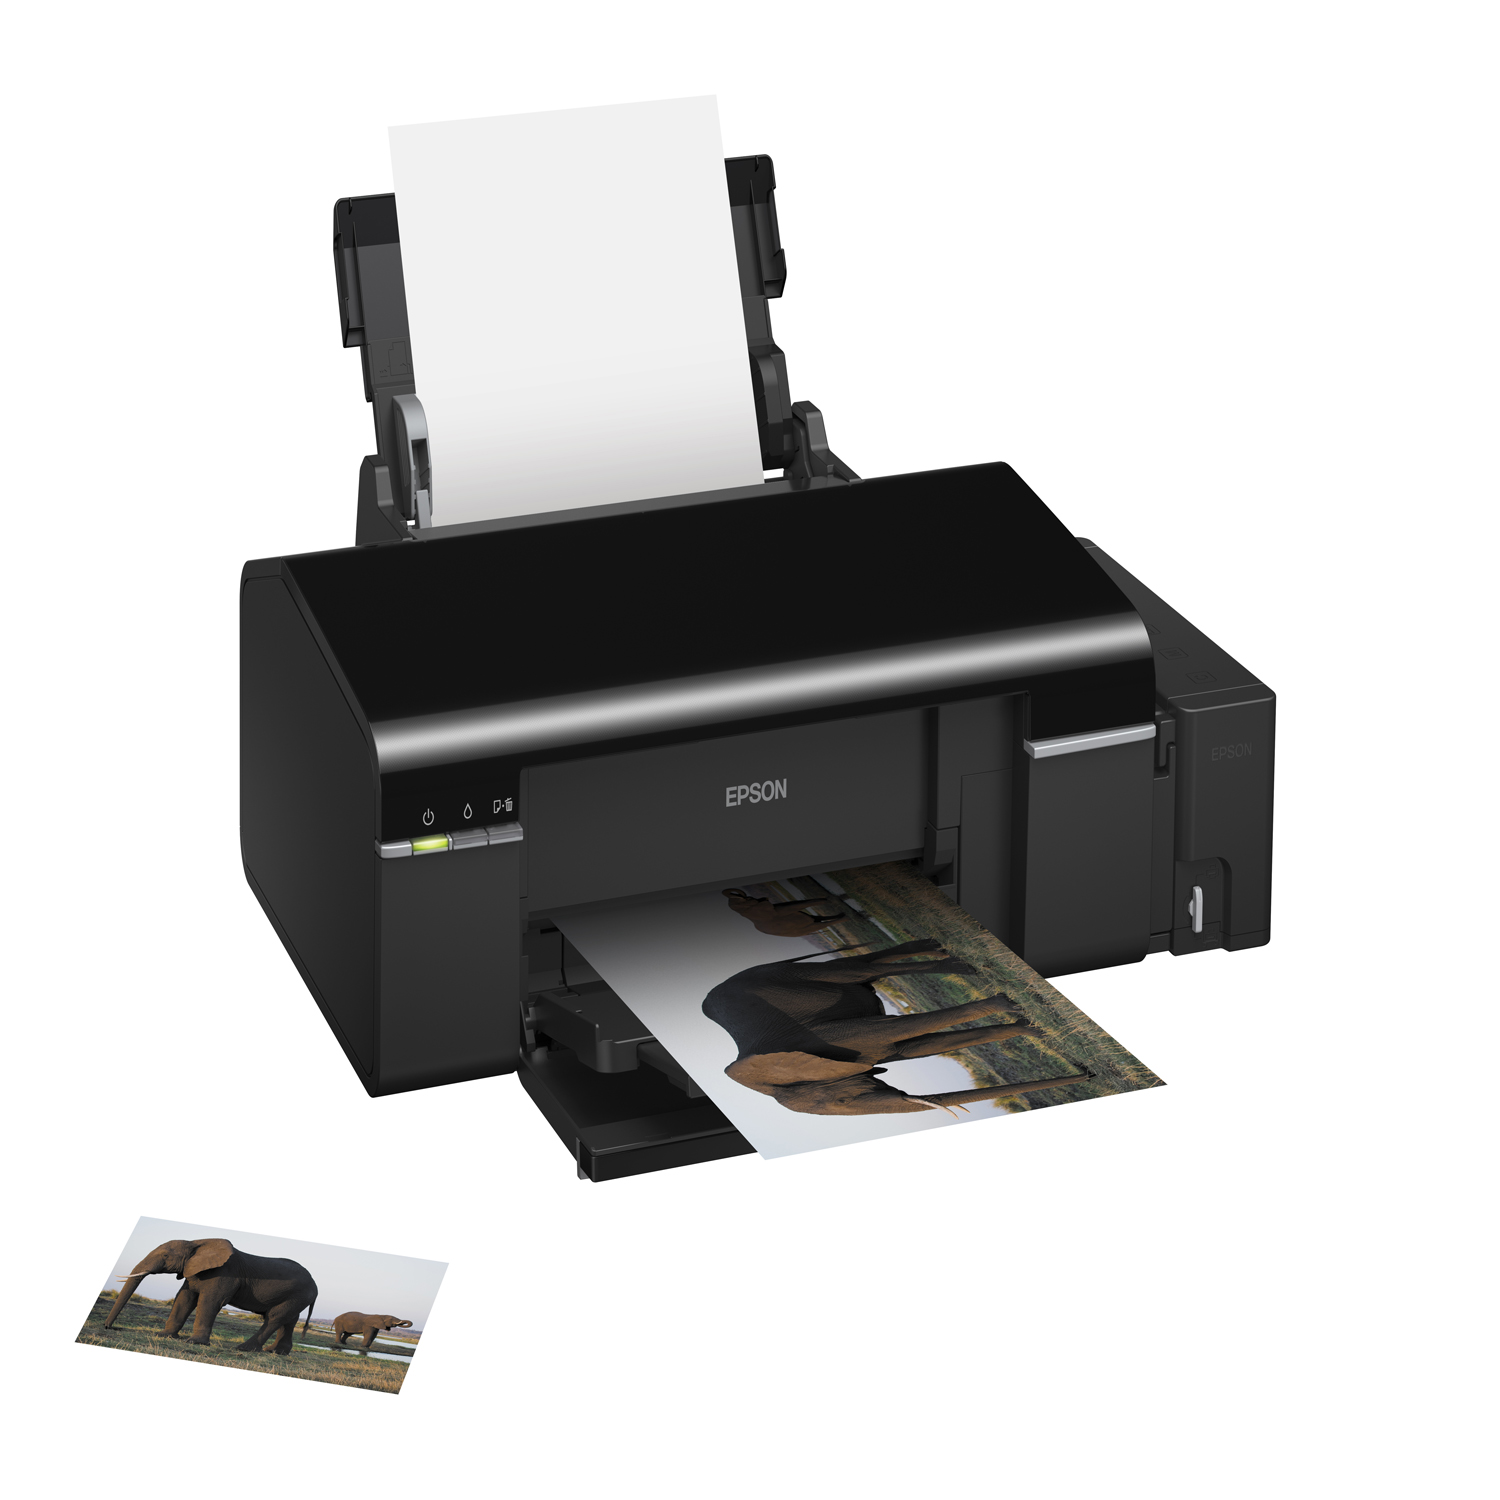 Epson L800 Photo Printer پرینتر اپسون مدل L800